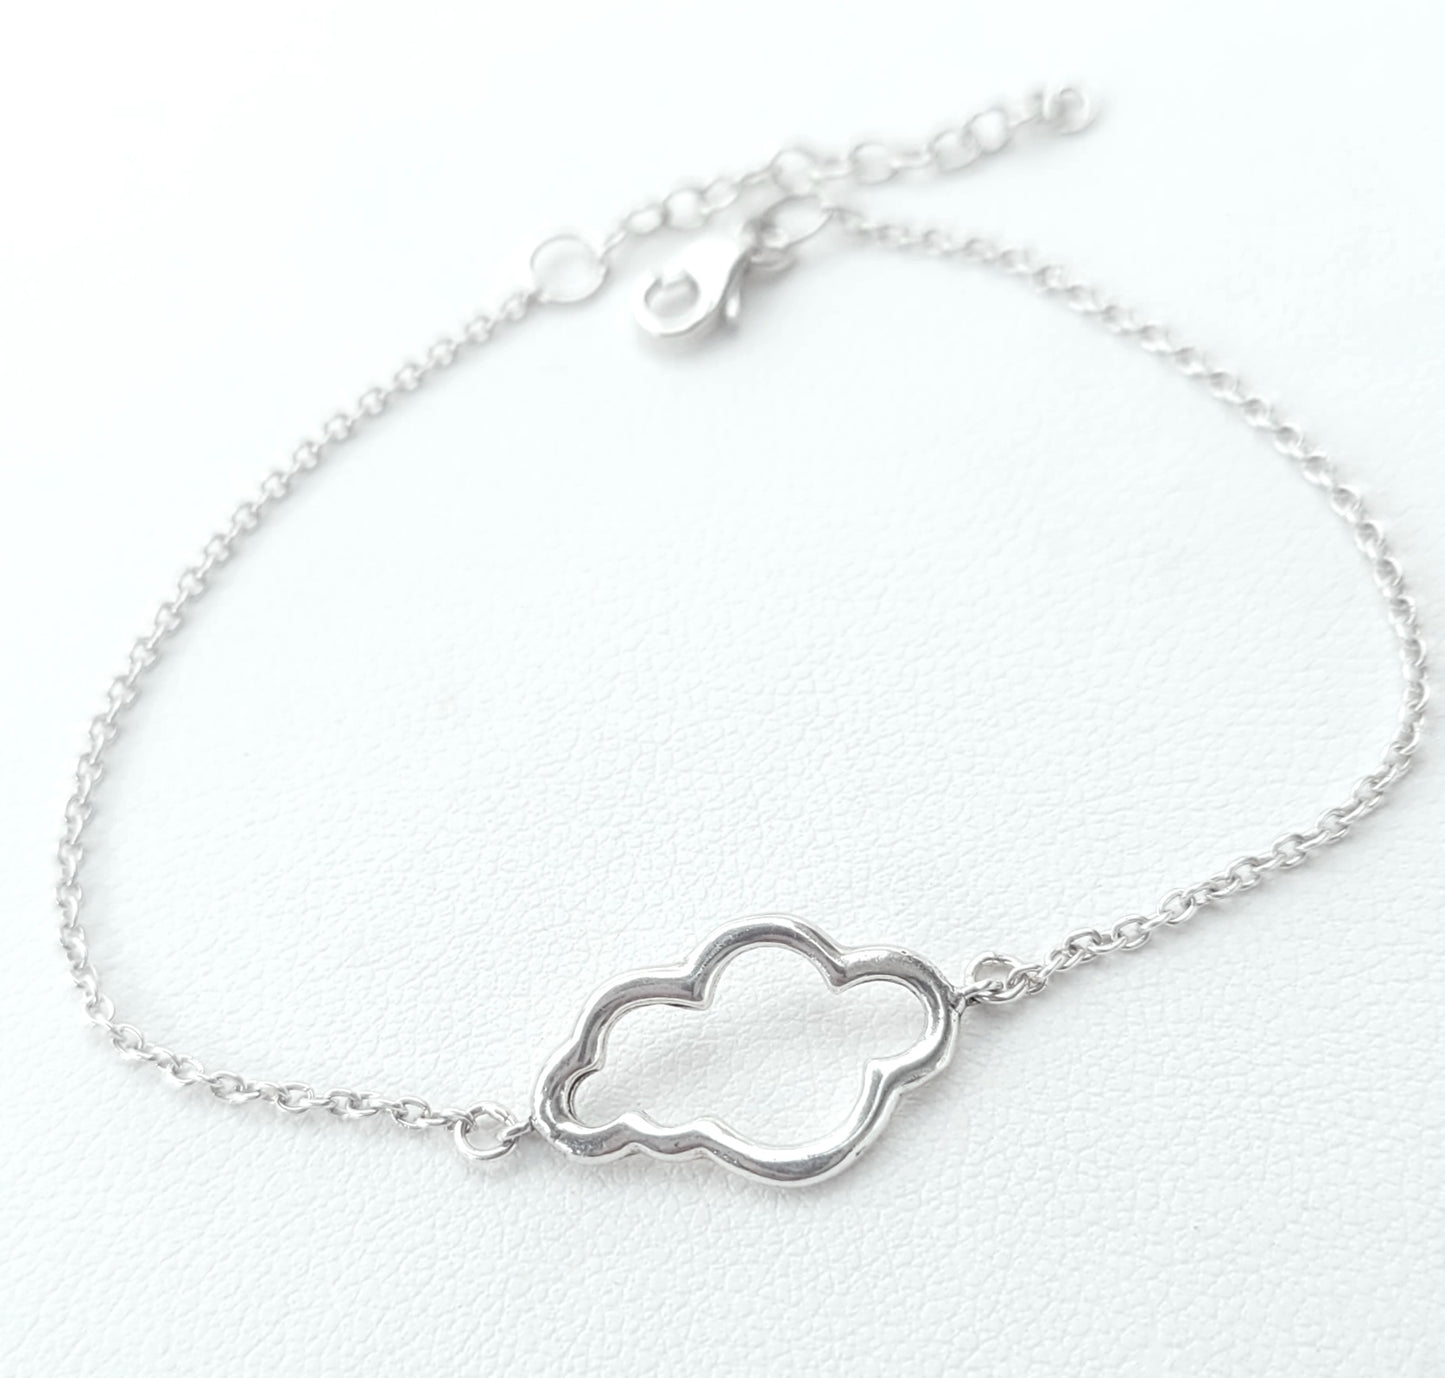 Sterling Silver Cloud Bracelet